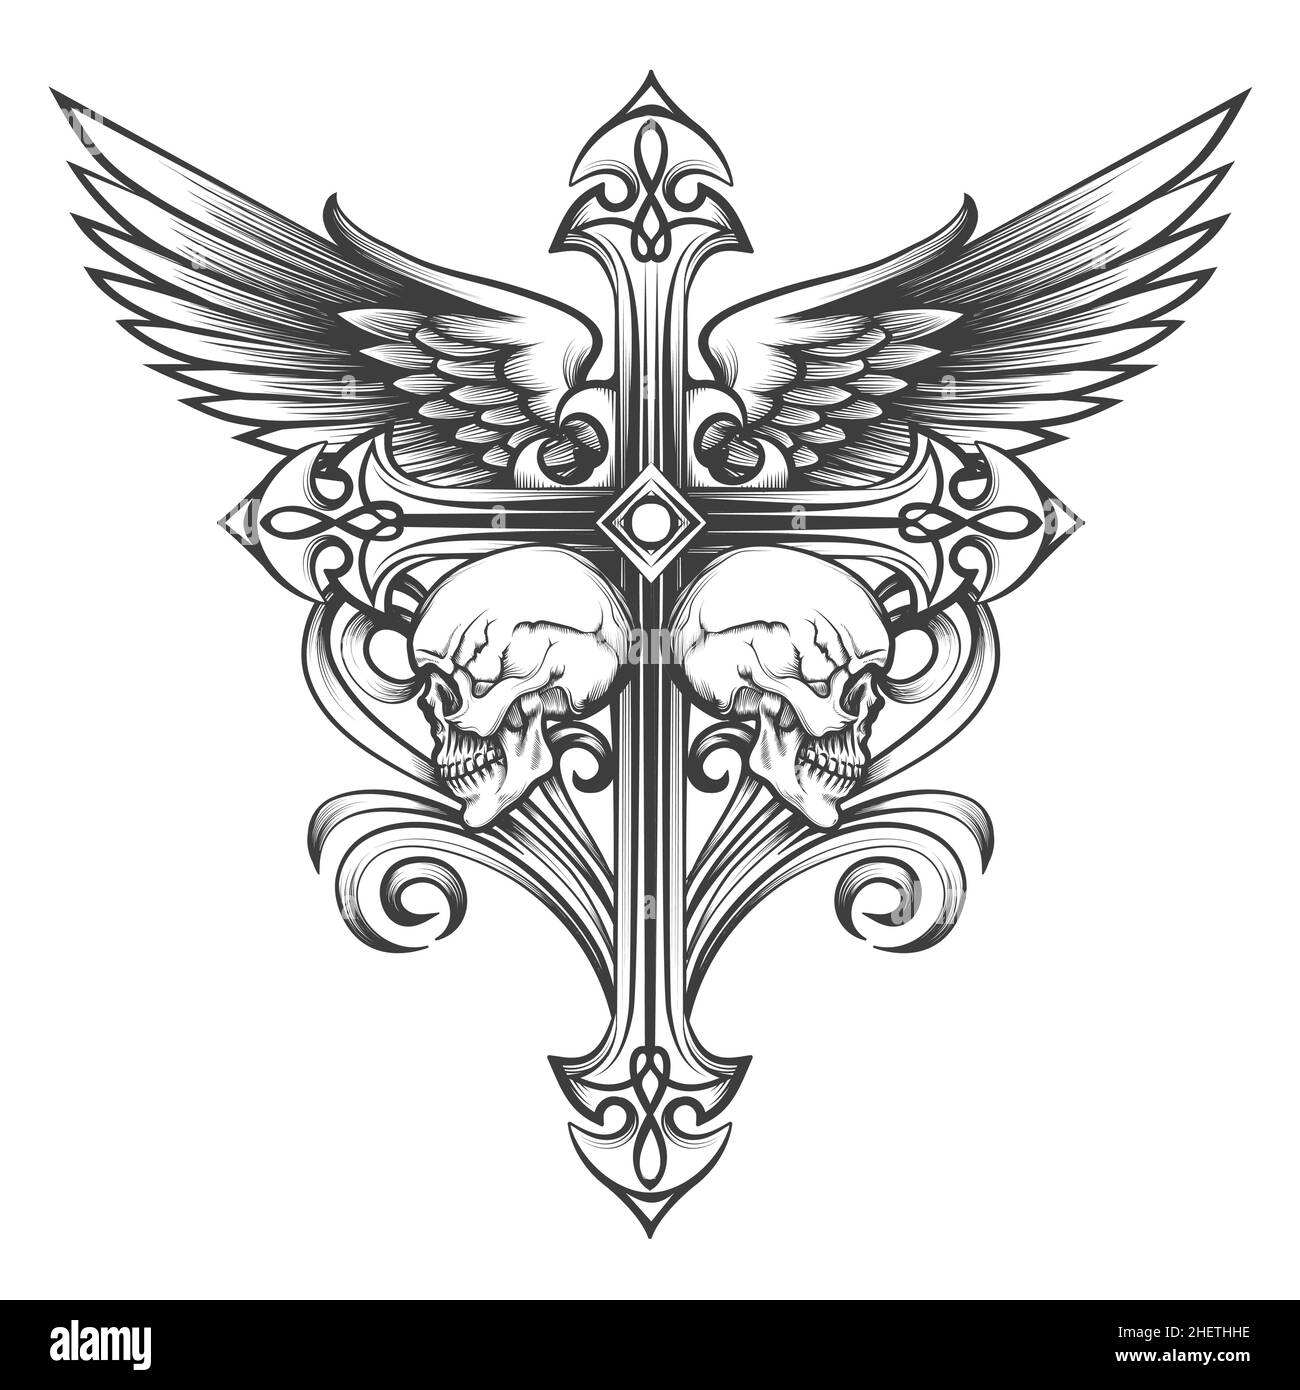 Tatouage de croix avec ailes et crânes dessinés en style gravure.Illustration vectorielle. Illustration de Vecteur